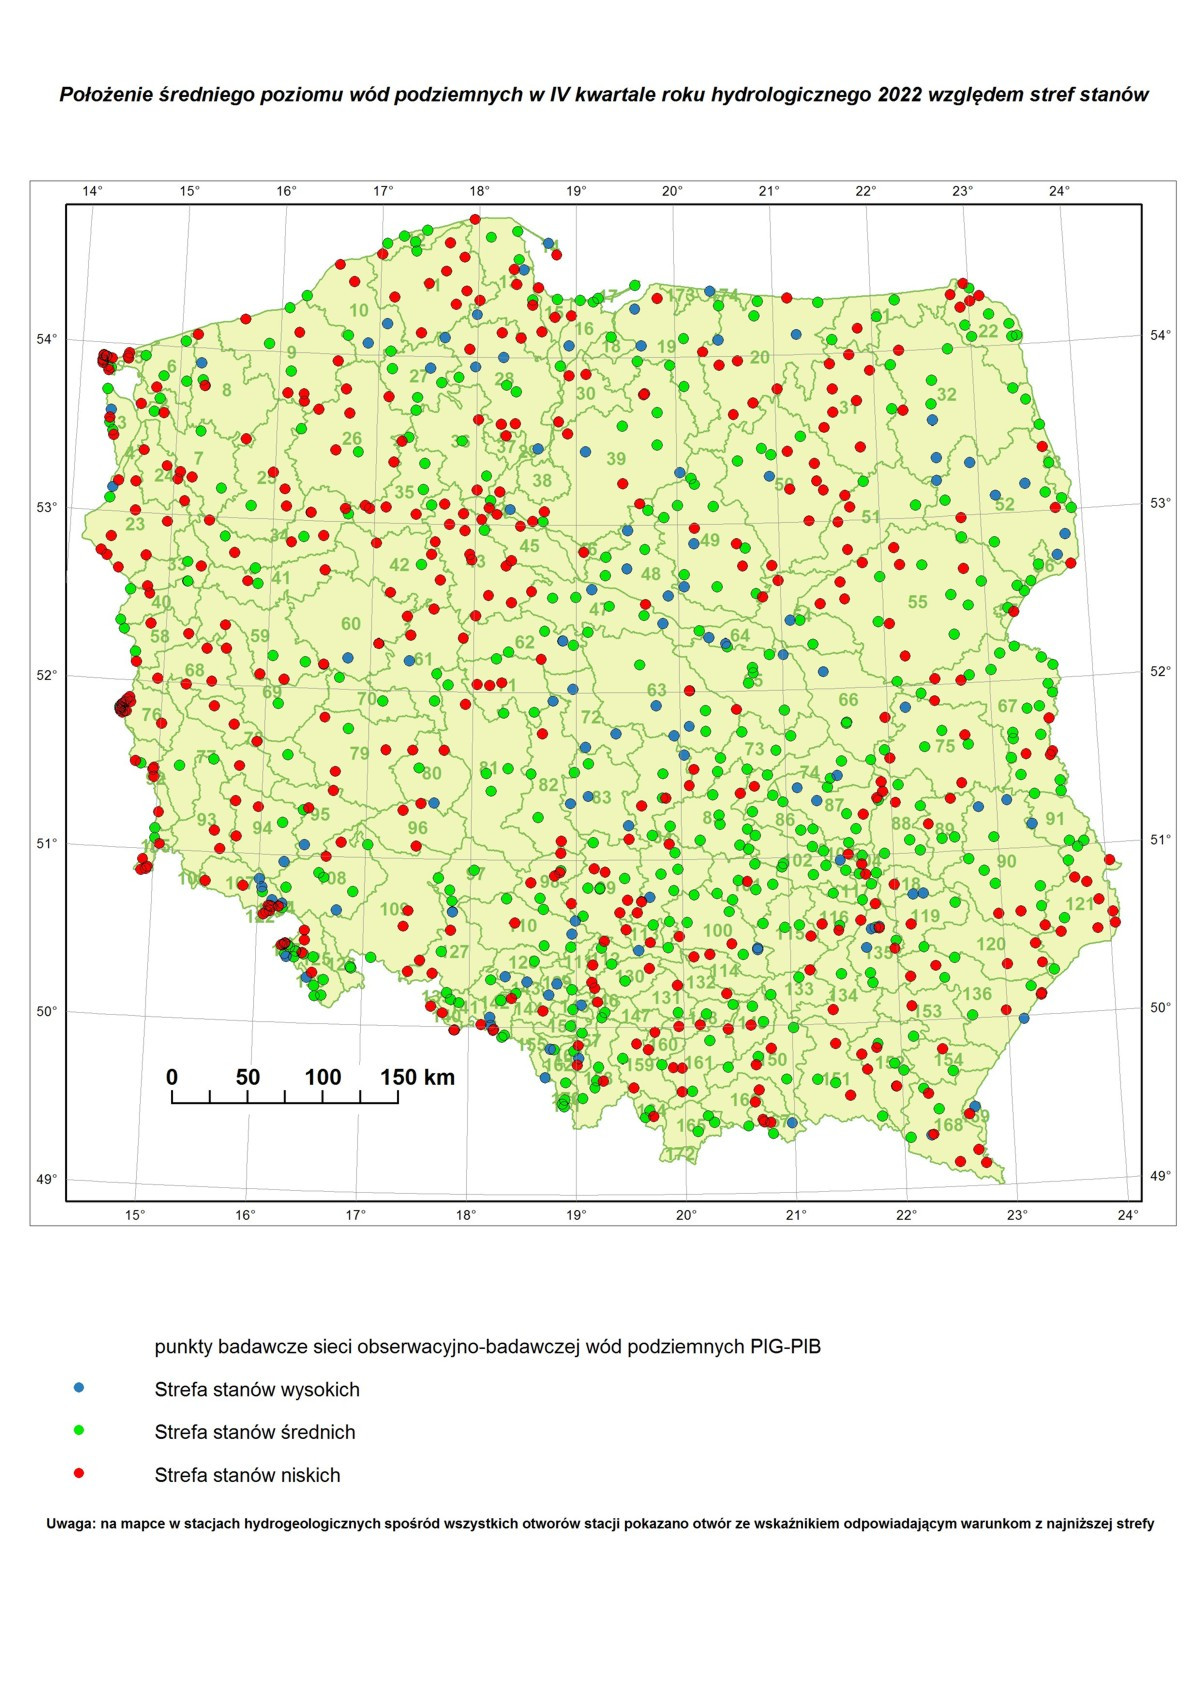 Poziom wód podziemnych w IV kwartale roku hydrologicznego 2022 w punktach badawczych sieci SOBWP. Mapa Polski z lokalizacją punktów z zaznaczonymi strefami stanów wód podziemnych